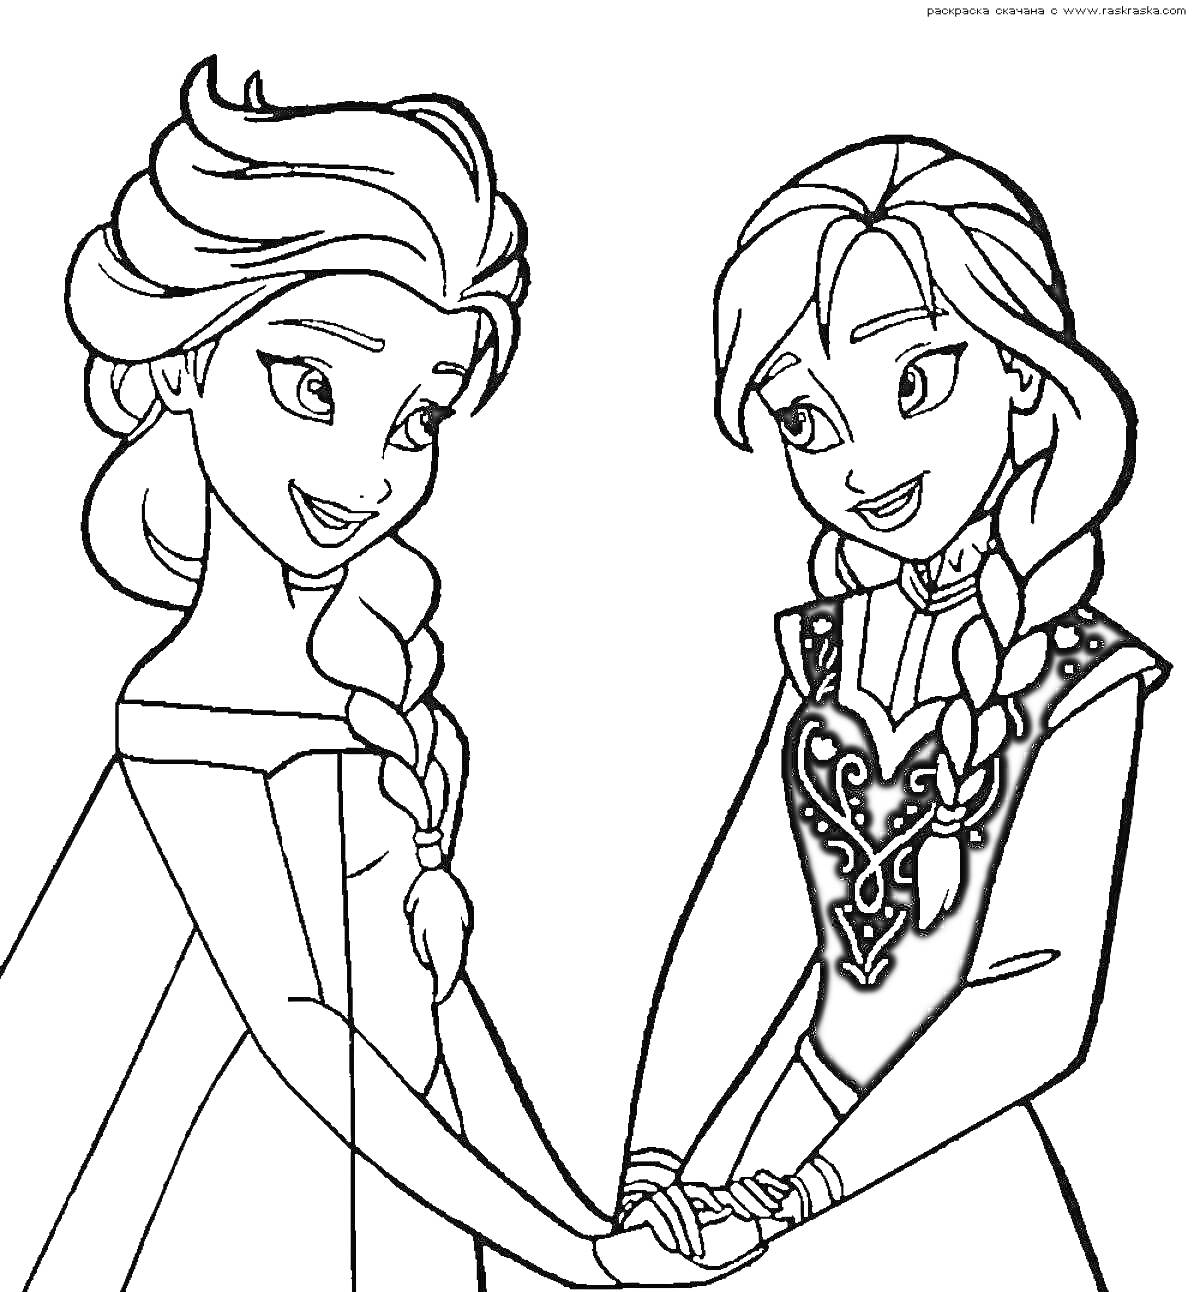 Раскраска Две девушки с косами держатся за руки.